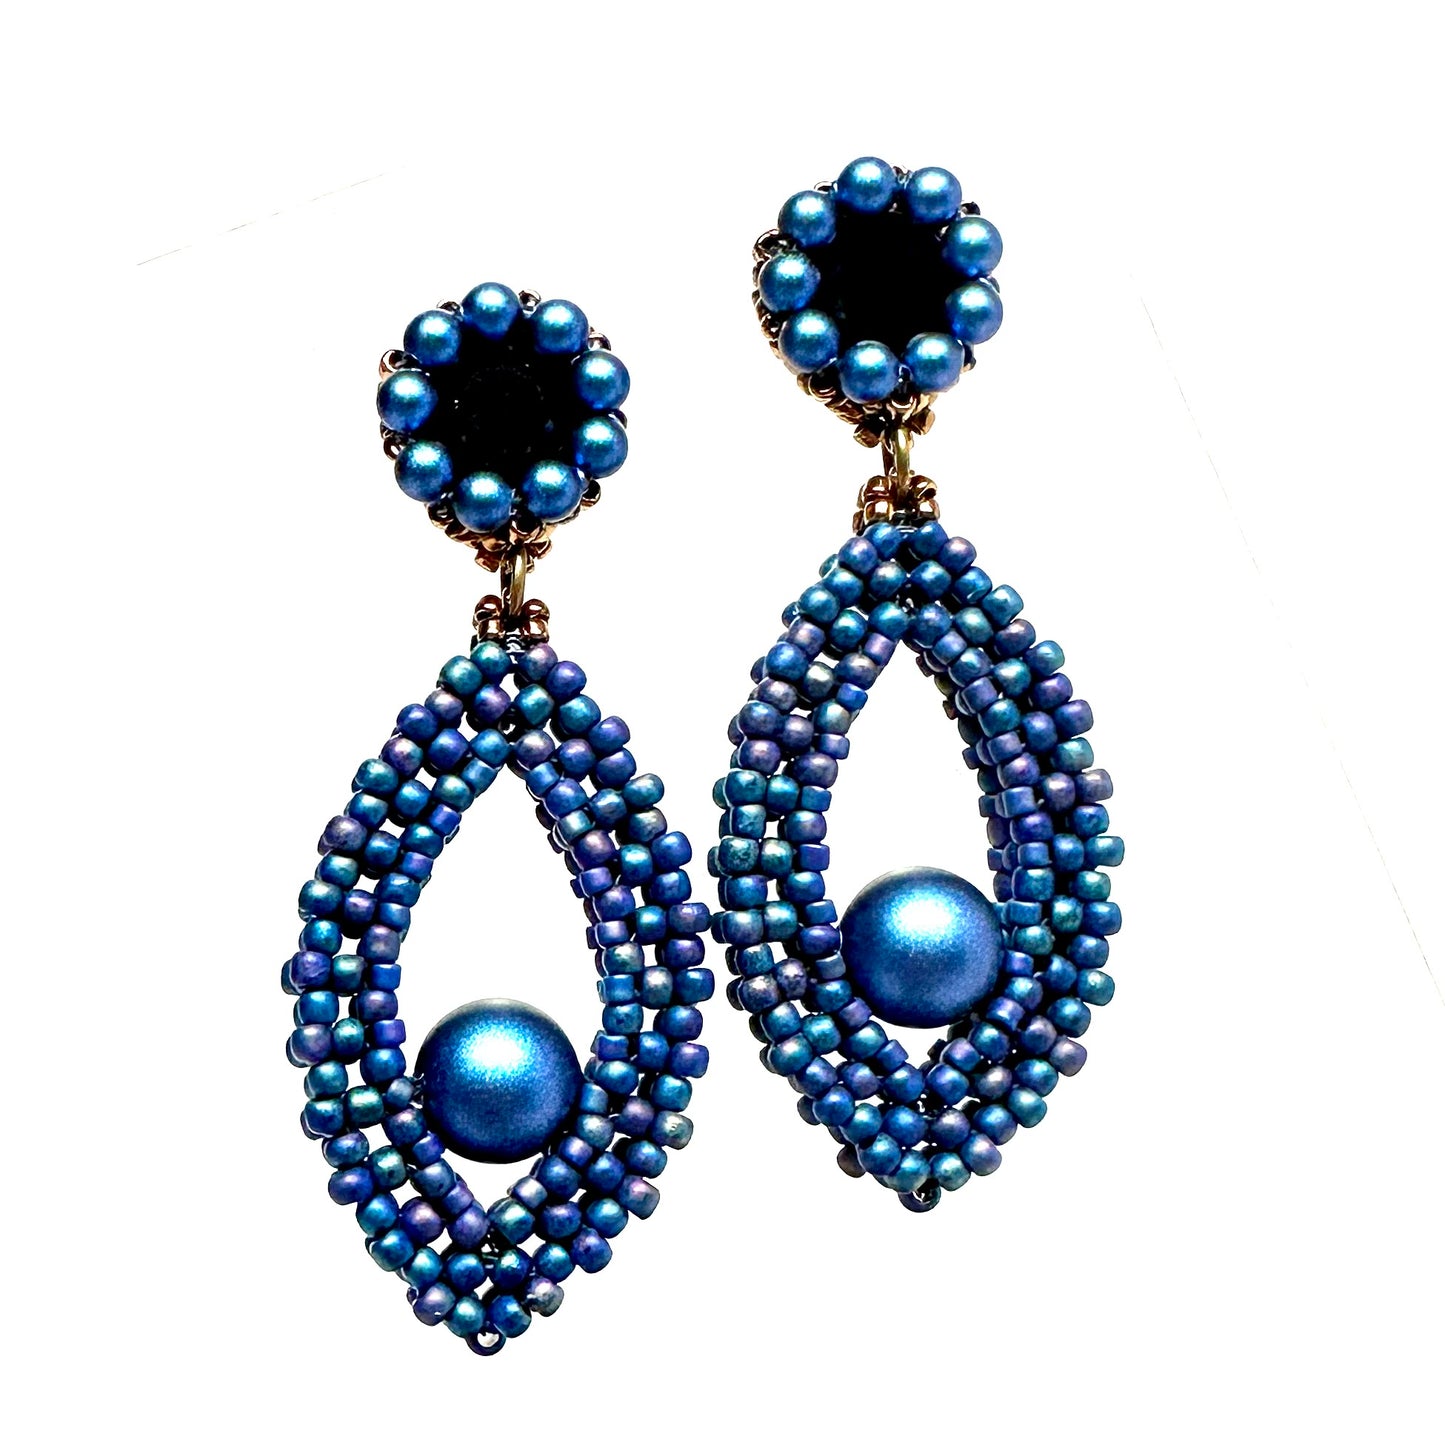 Hojas Post Earrings - Blue